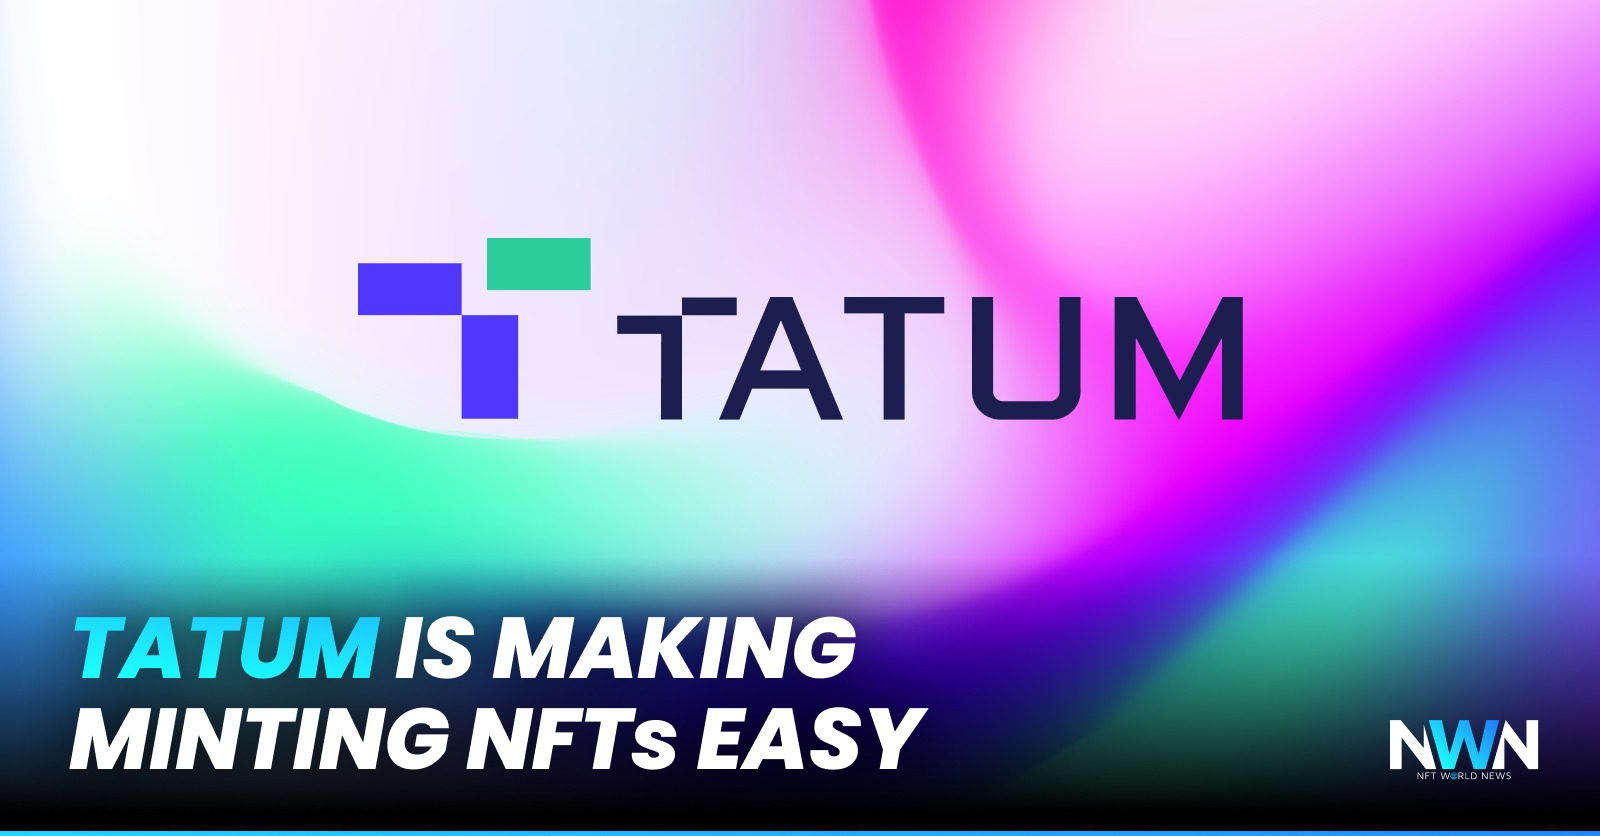 Tatum Is Making NFT Minting Easy